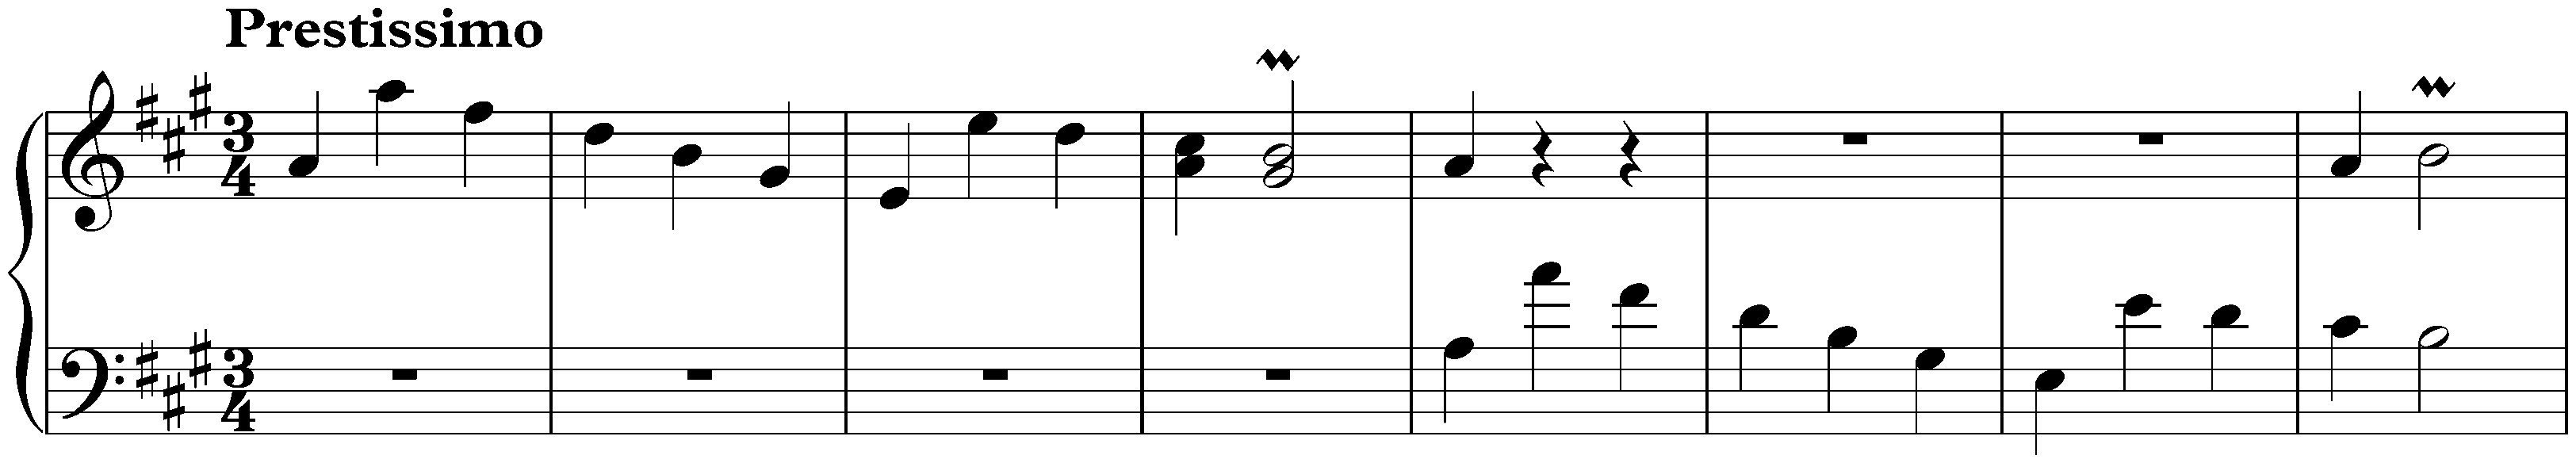 Sonata in A major, K. 537